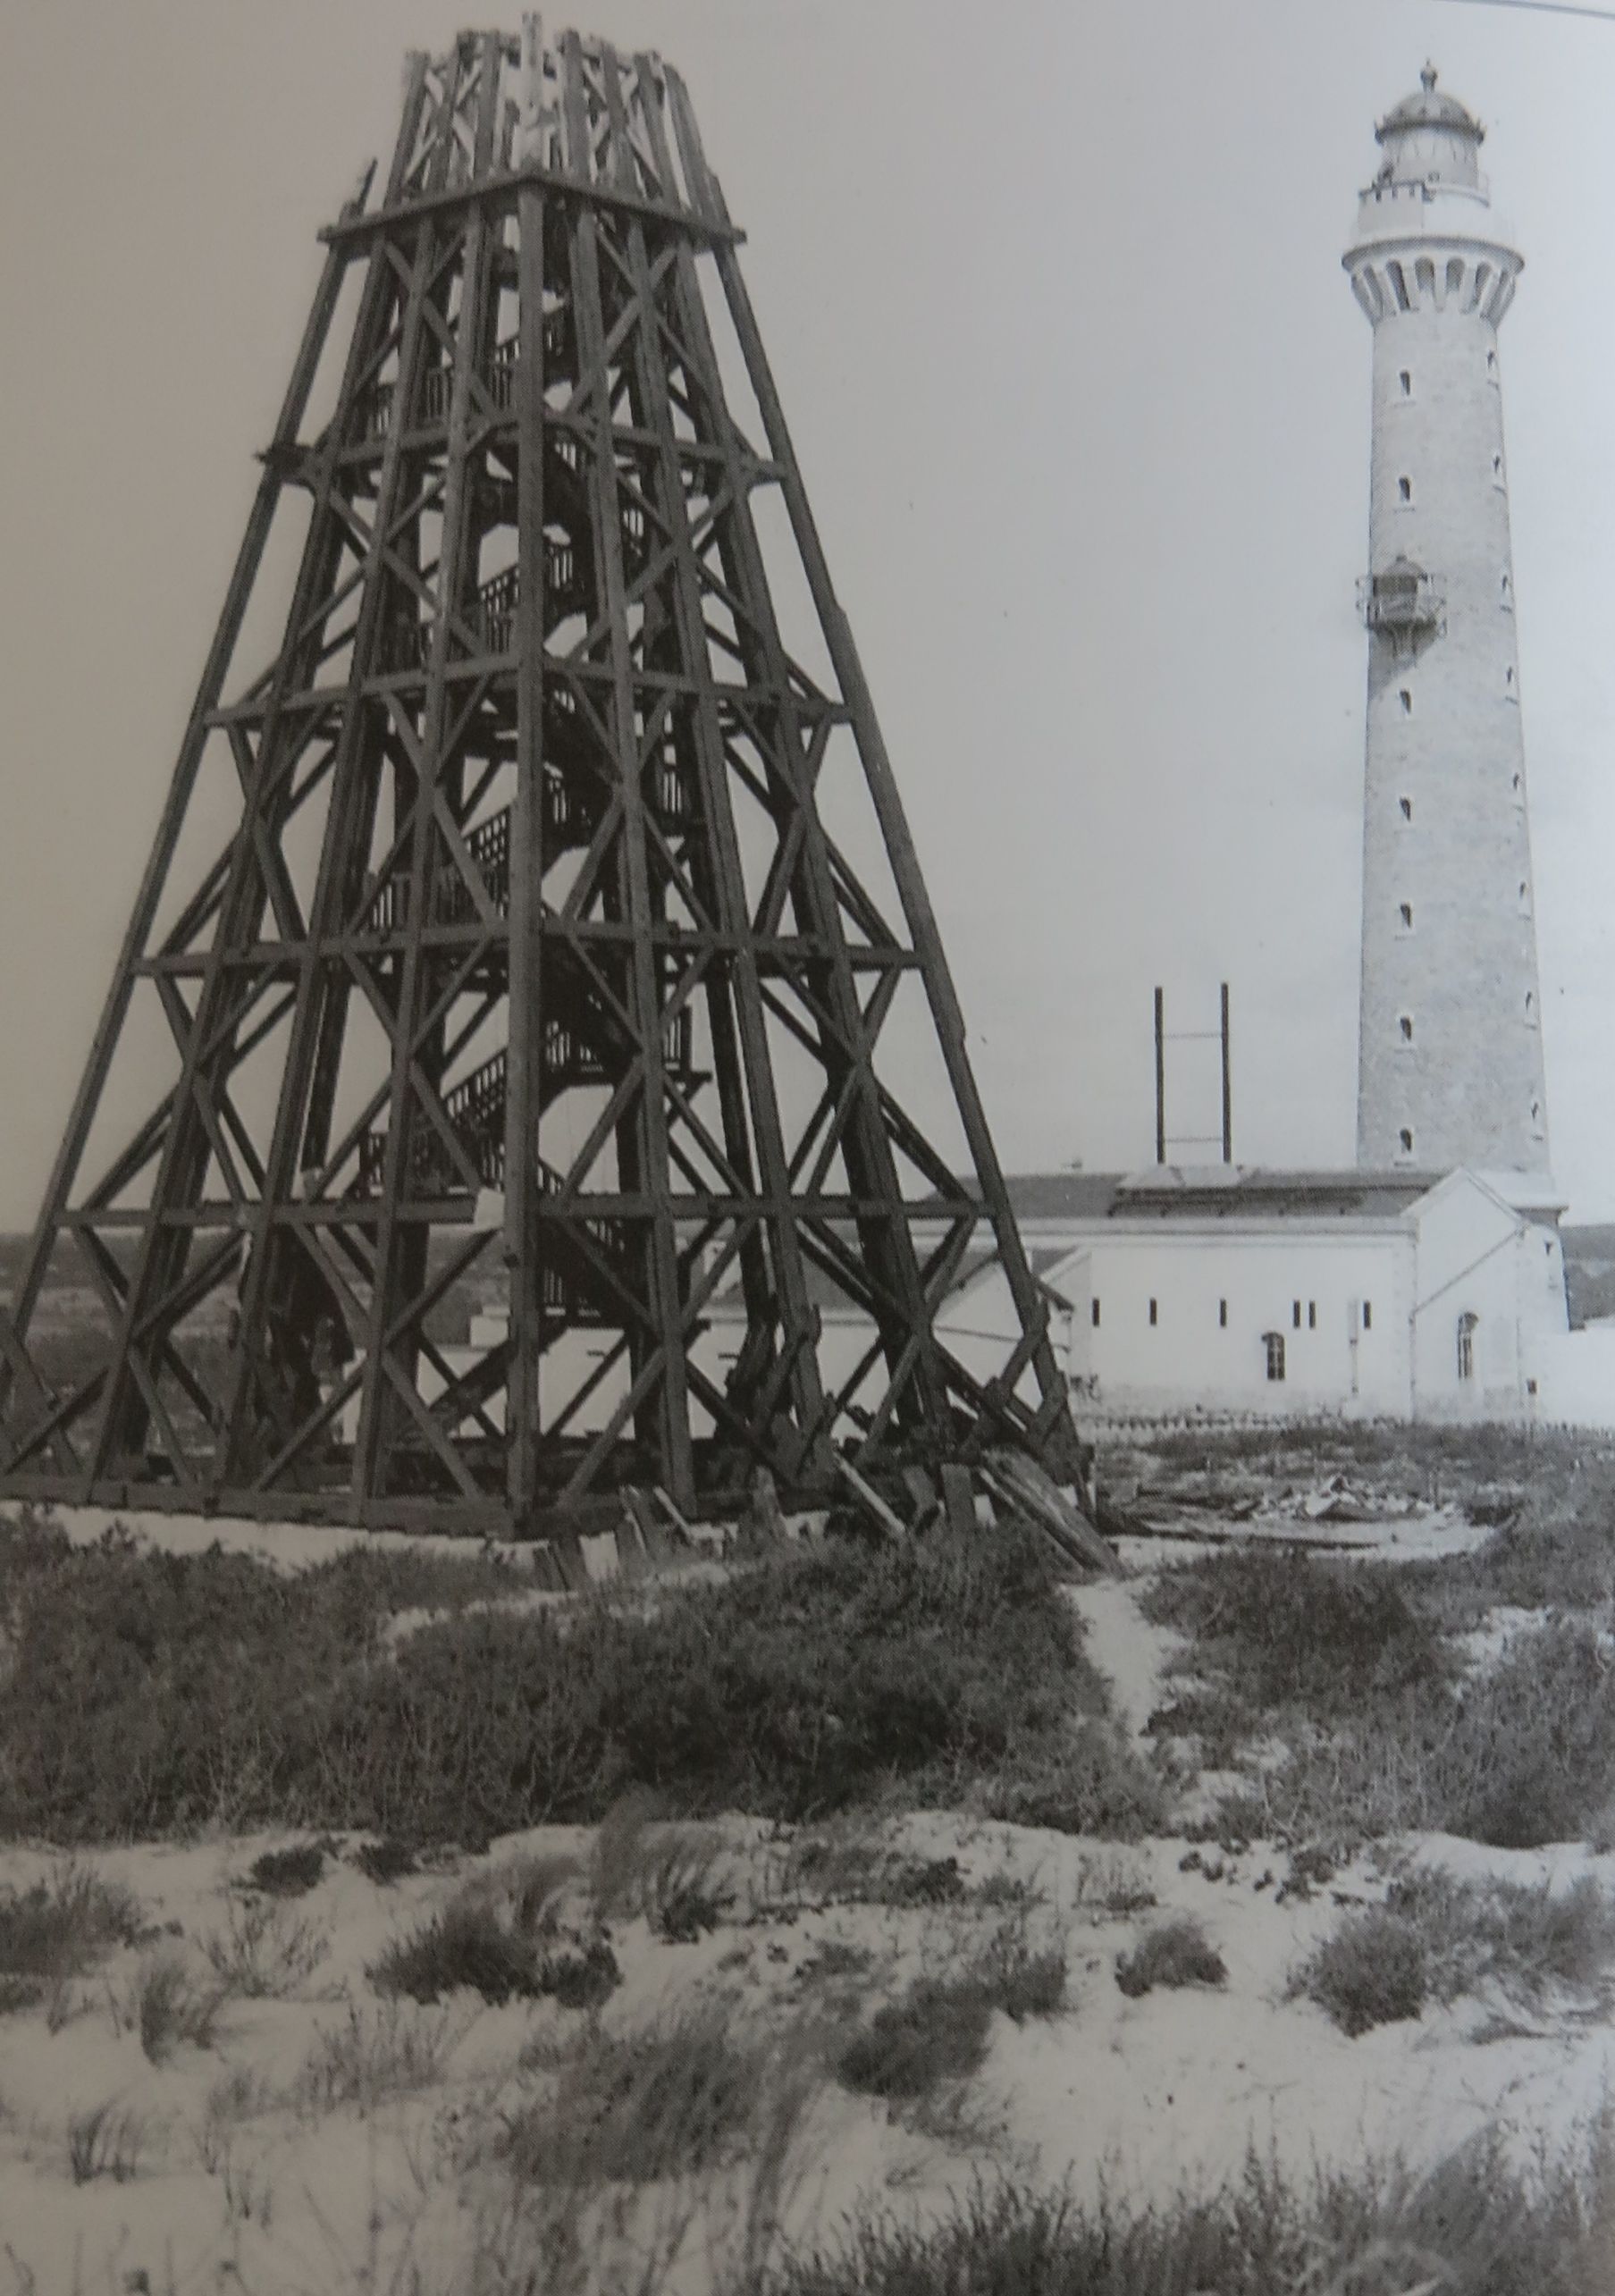 La tour en bois de 1860 au moment de sa démolition en 1897, à côté du phare de 1895.